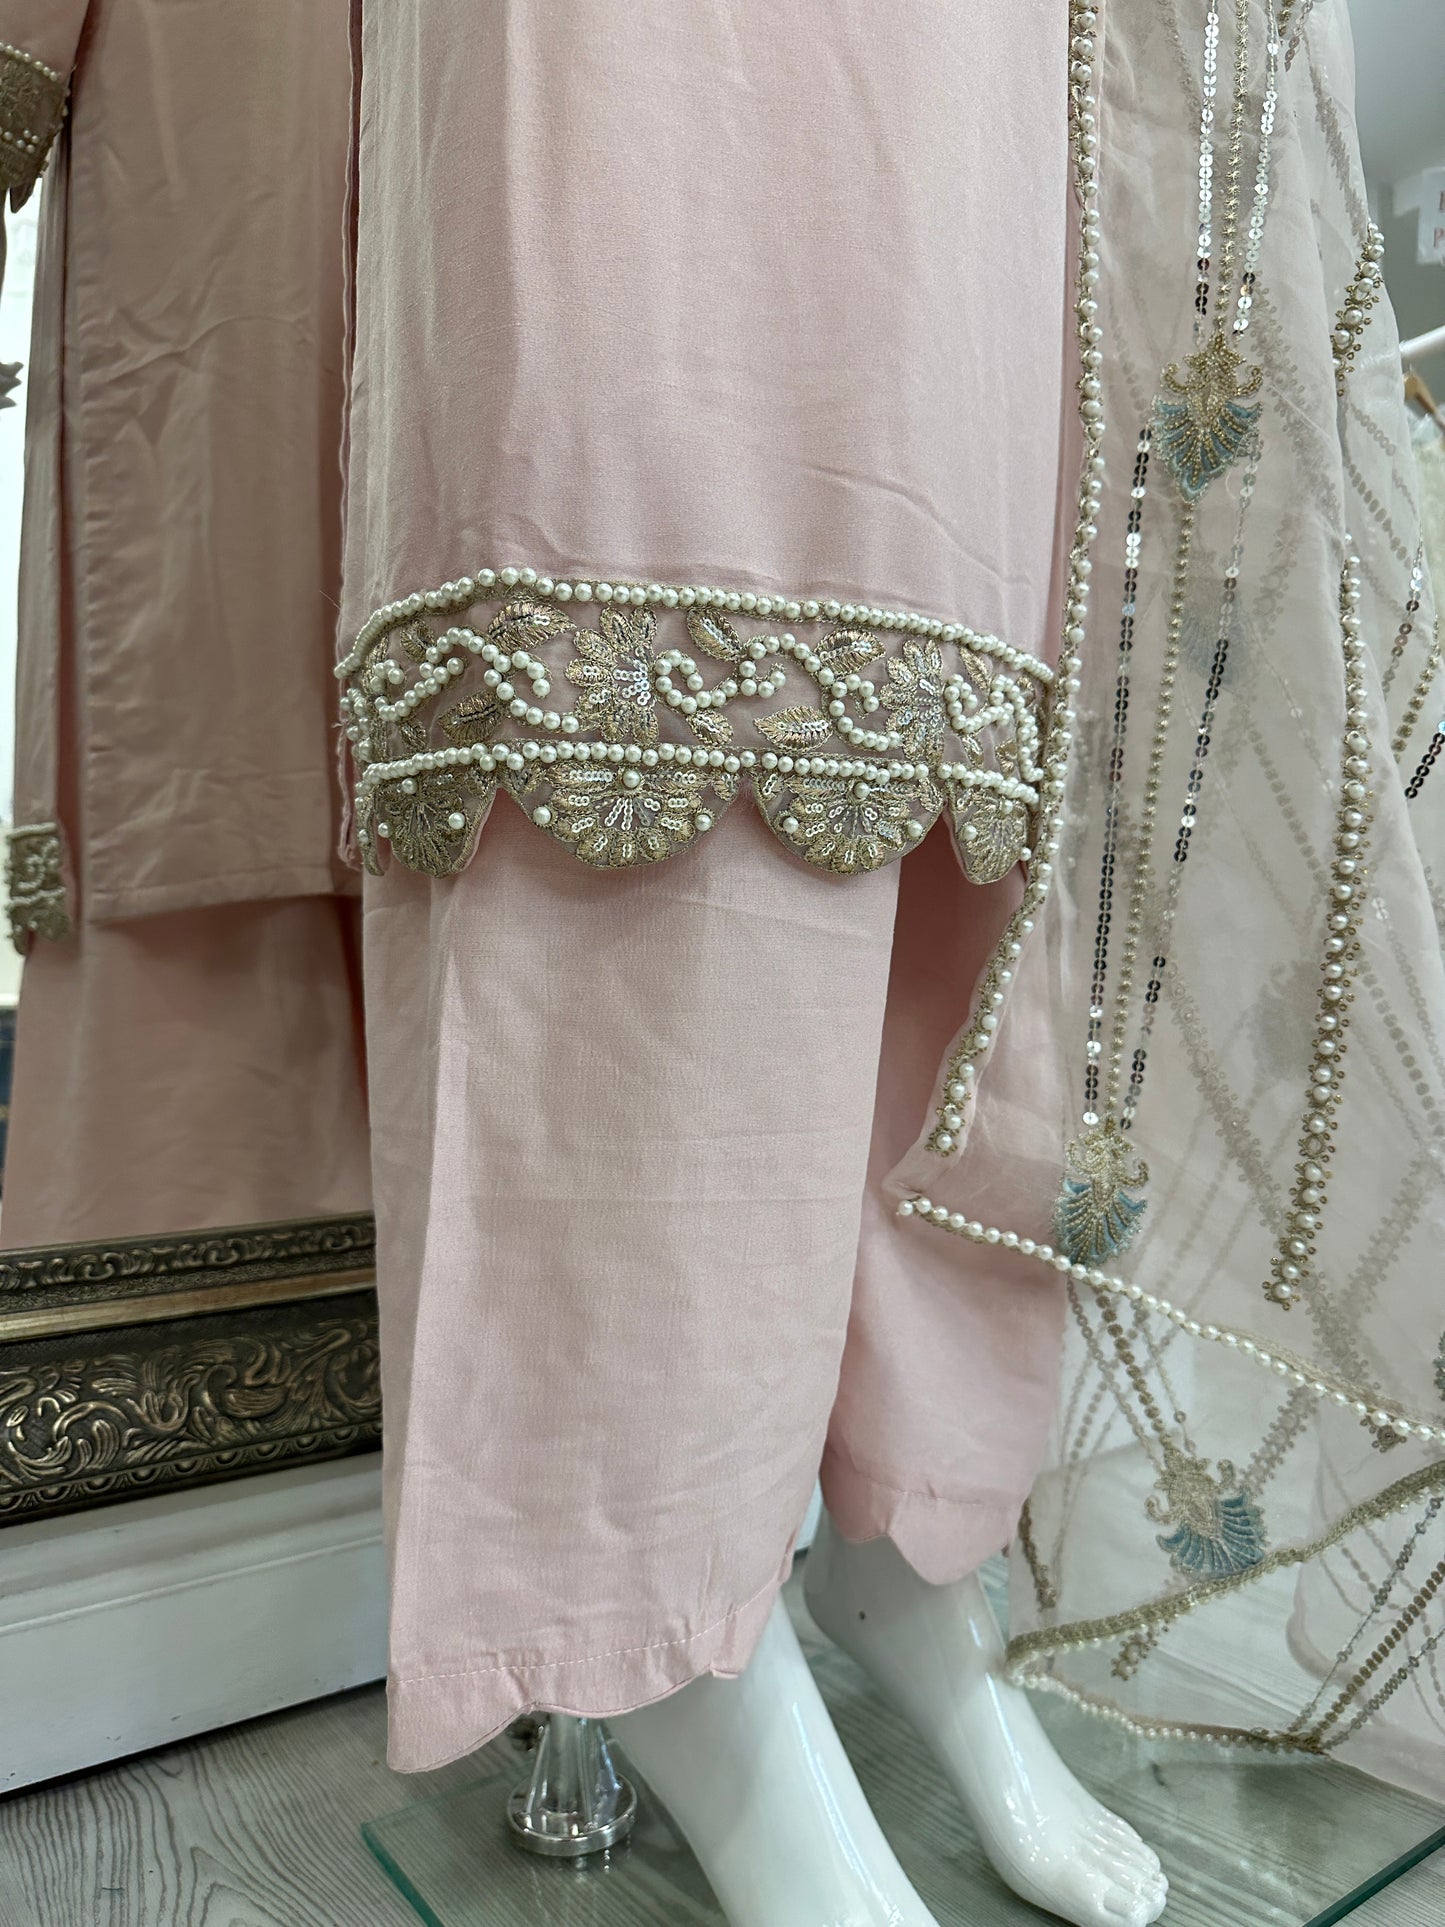 Pink Silk Ladies Suit